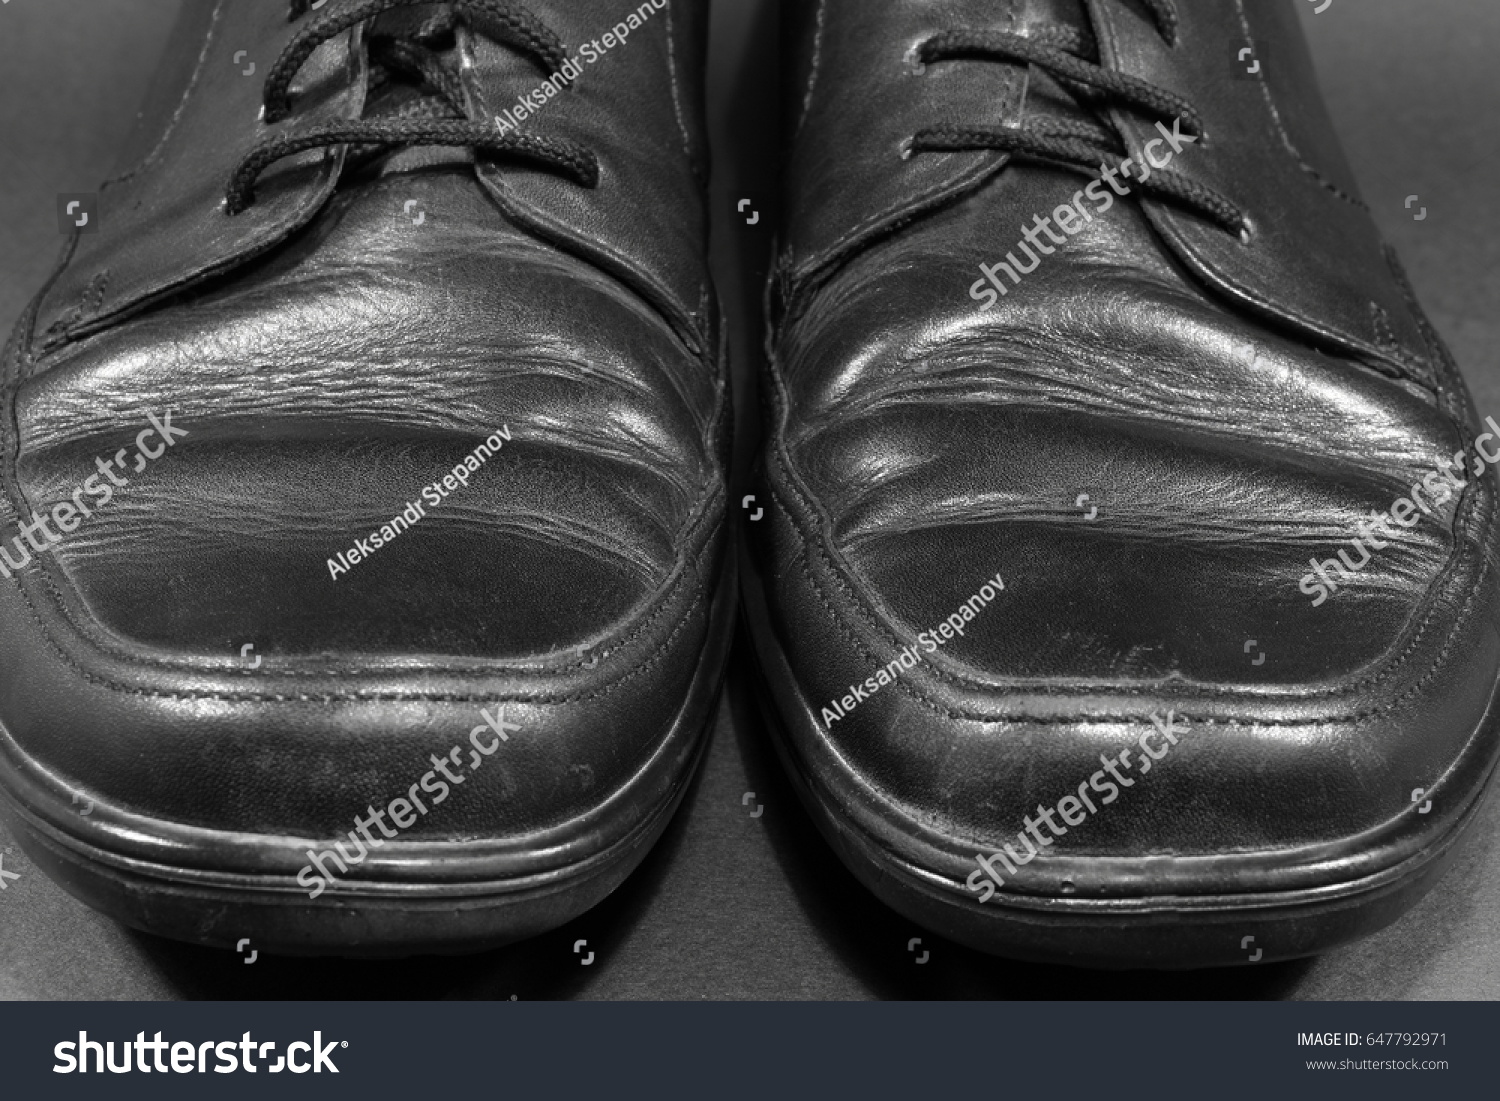 old man black shoes